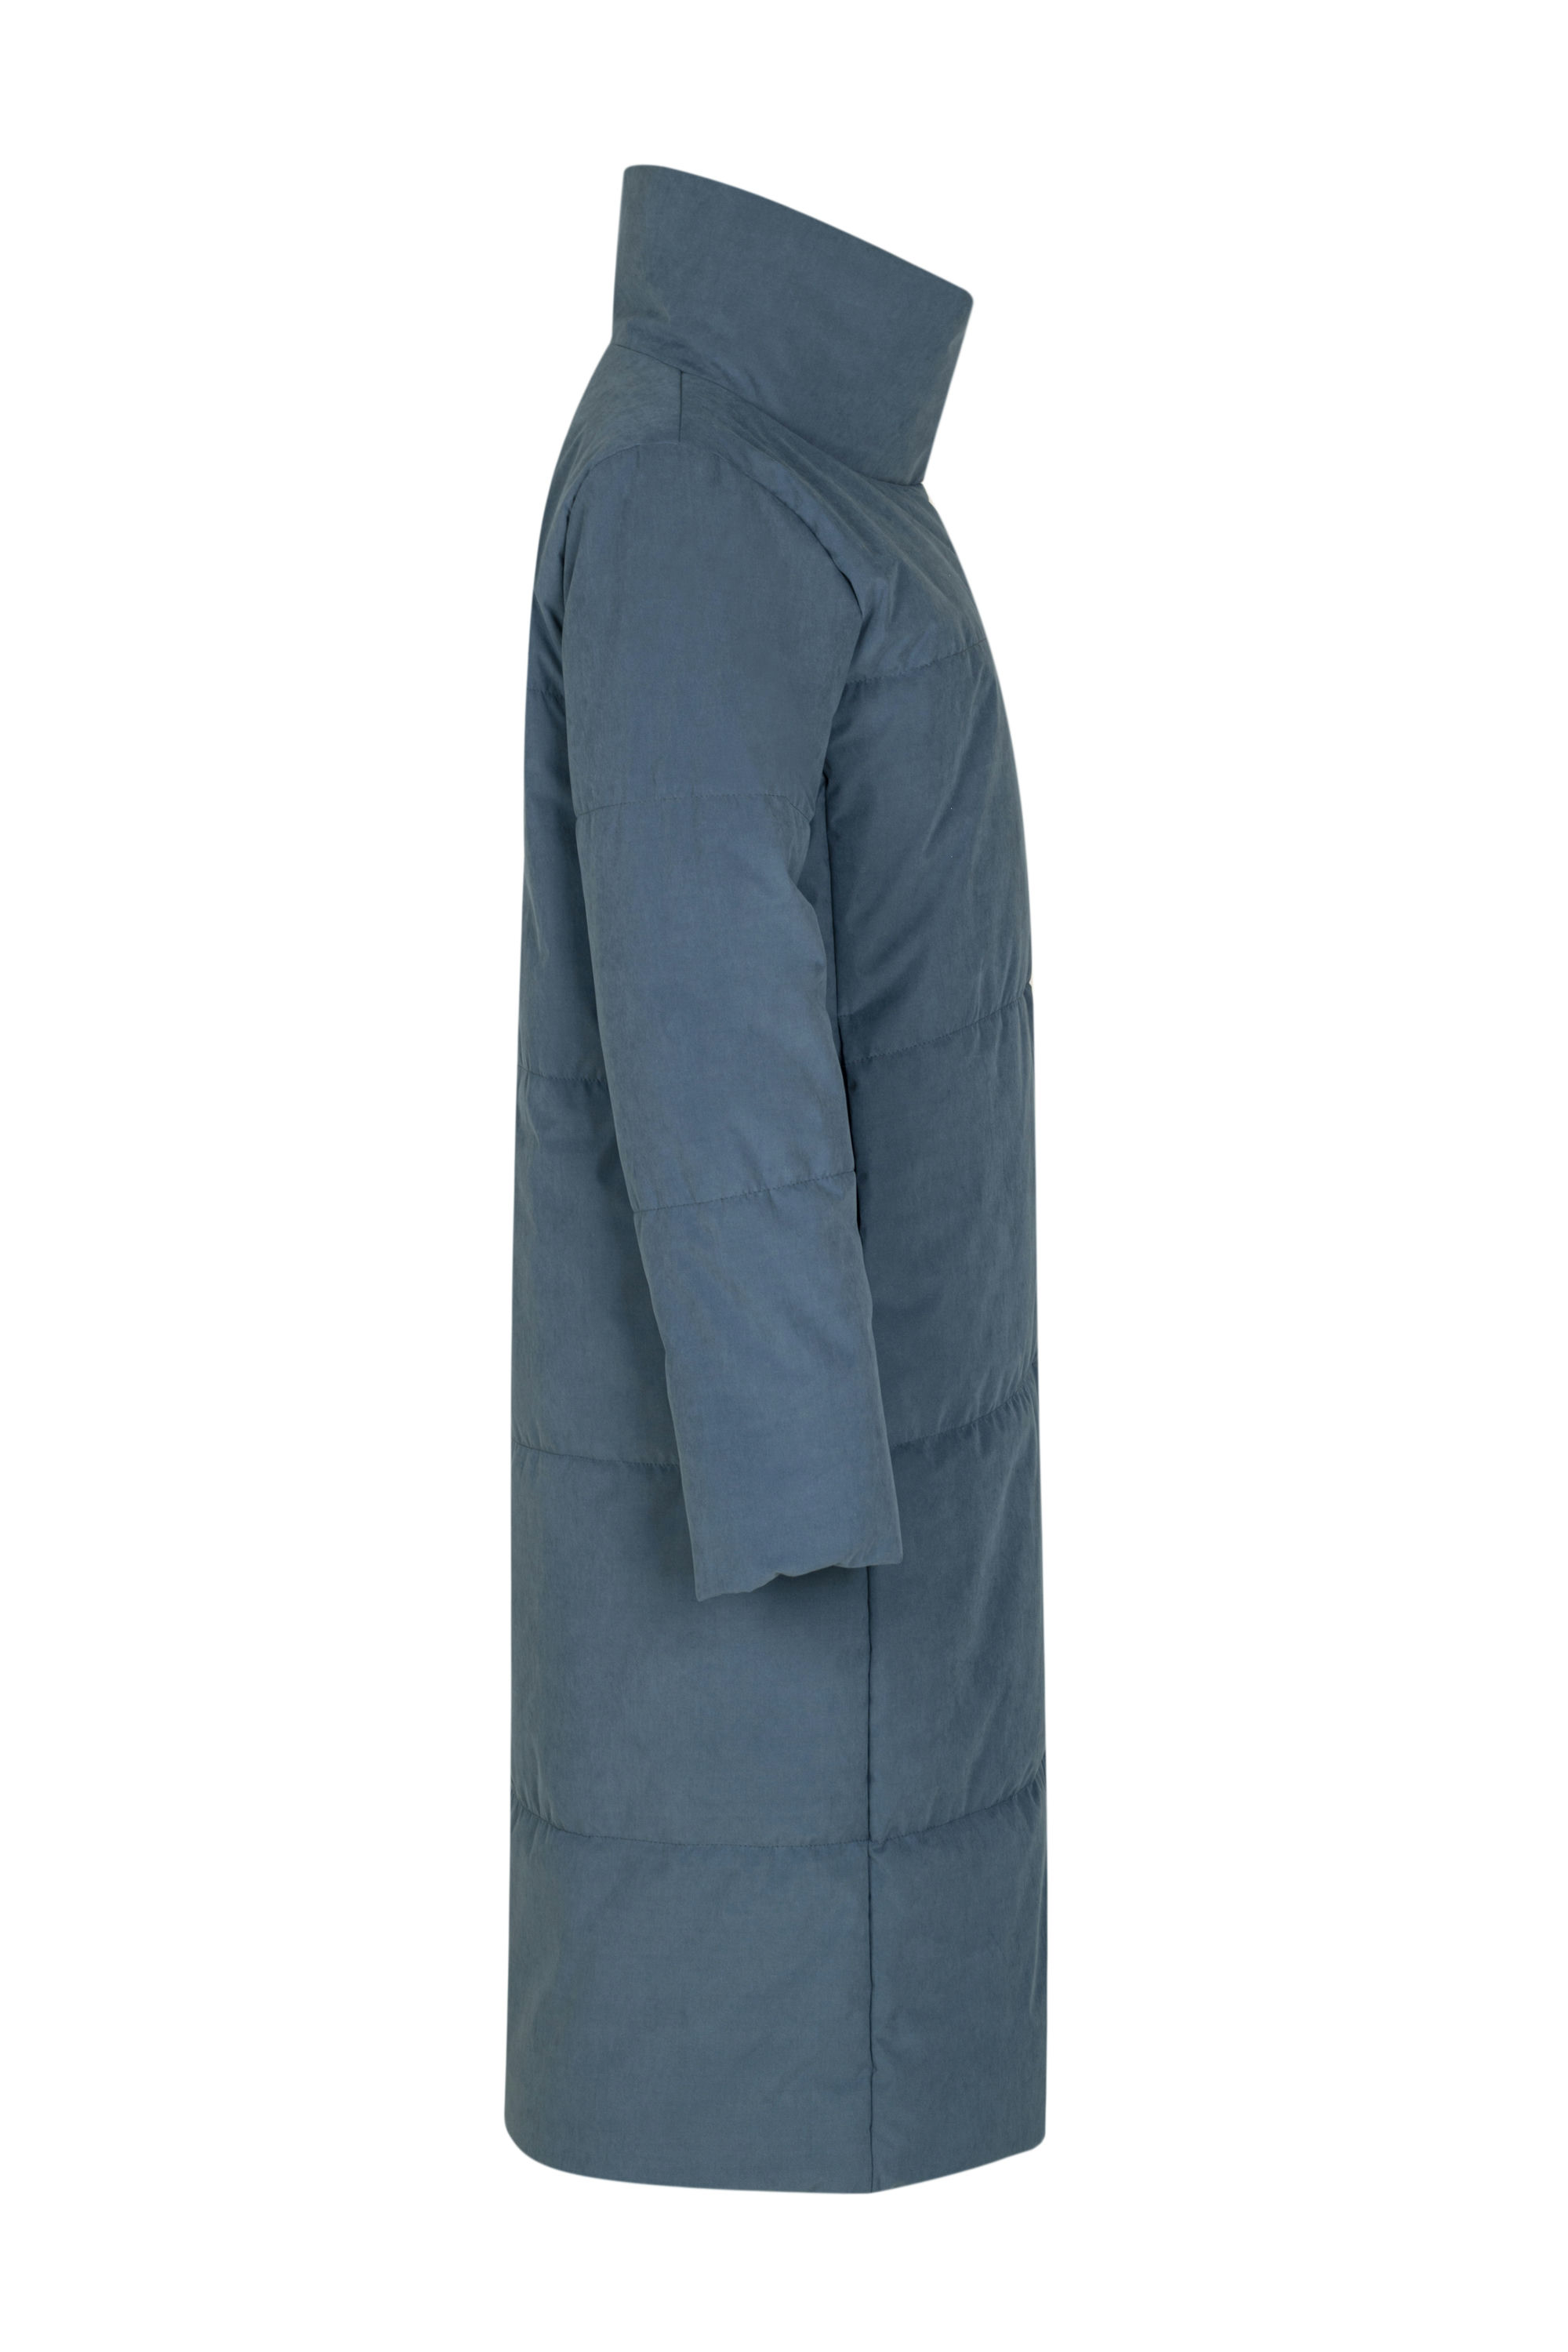 Пальто женское плащевое утепленное 5-12802-1. Фото 2.